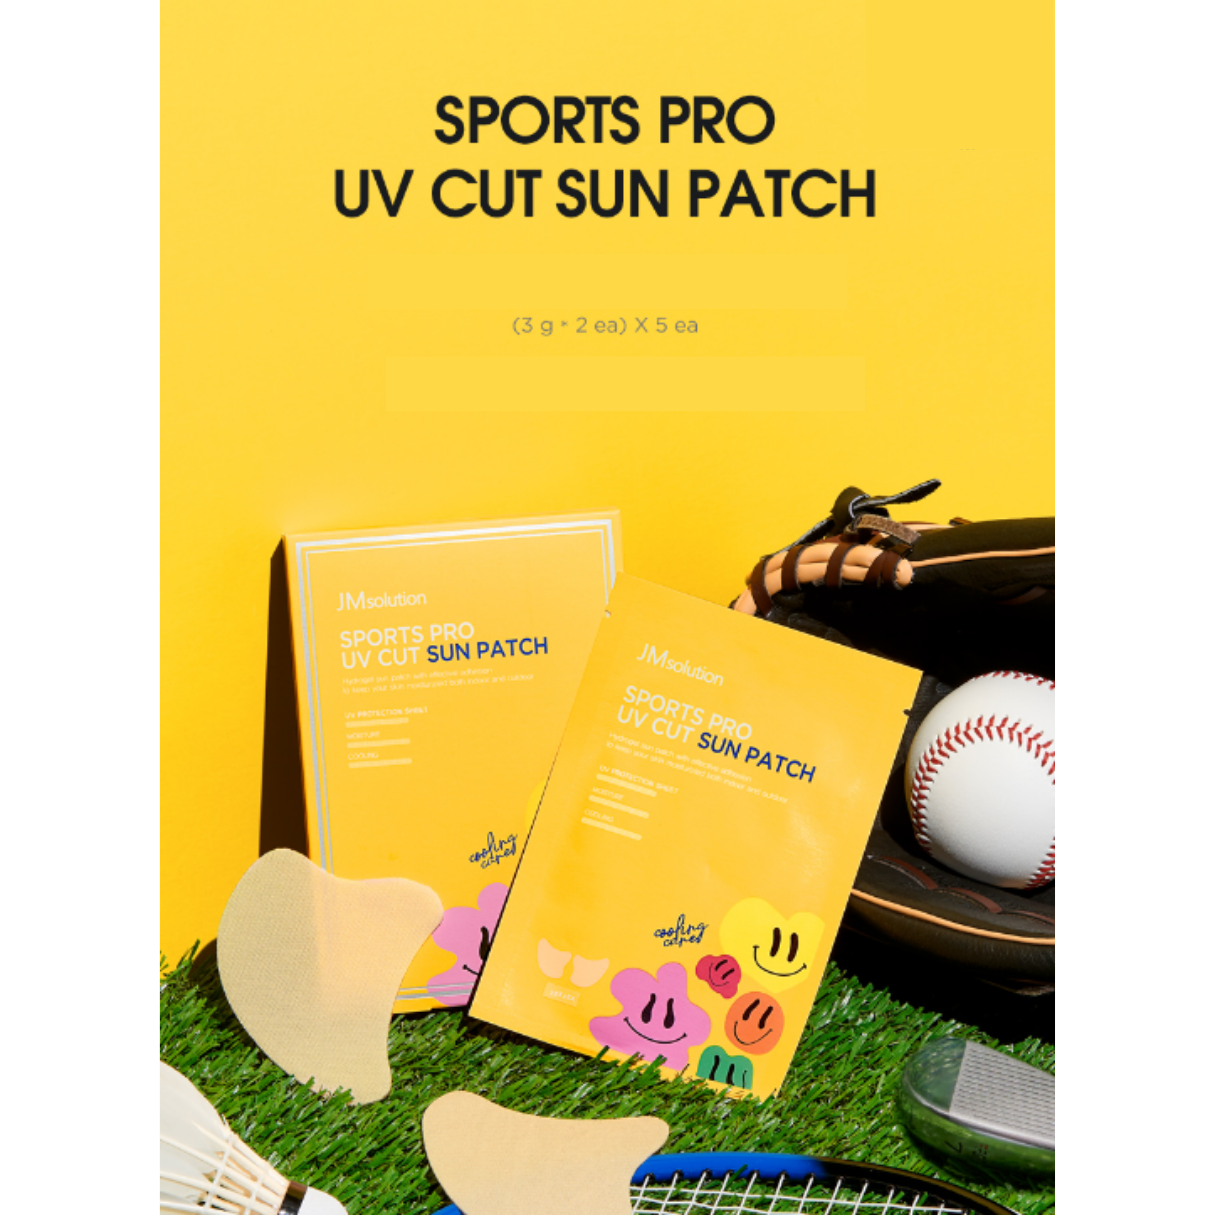 [JMSOLUTION] Sports Pro UV Cut Sun Patch